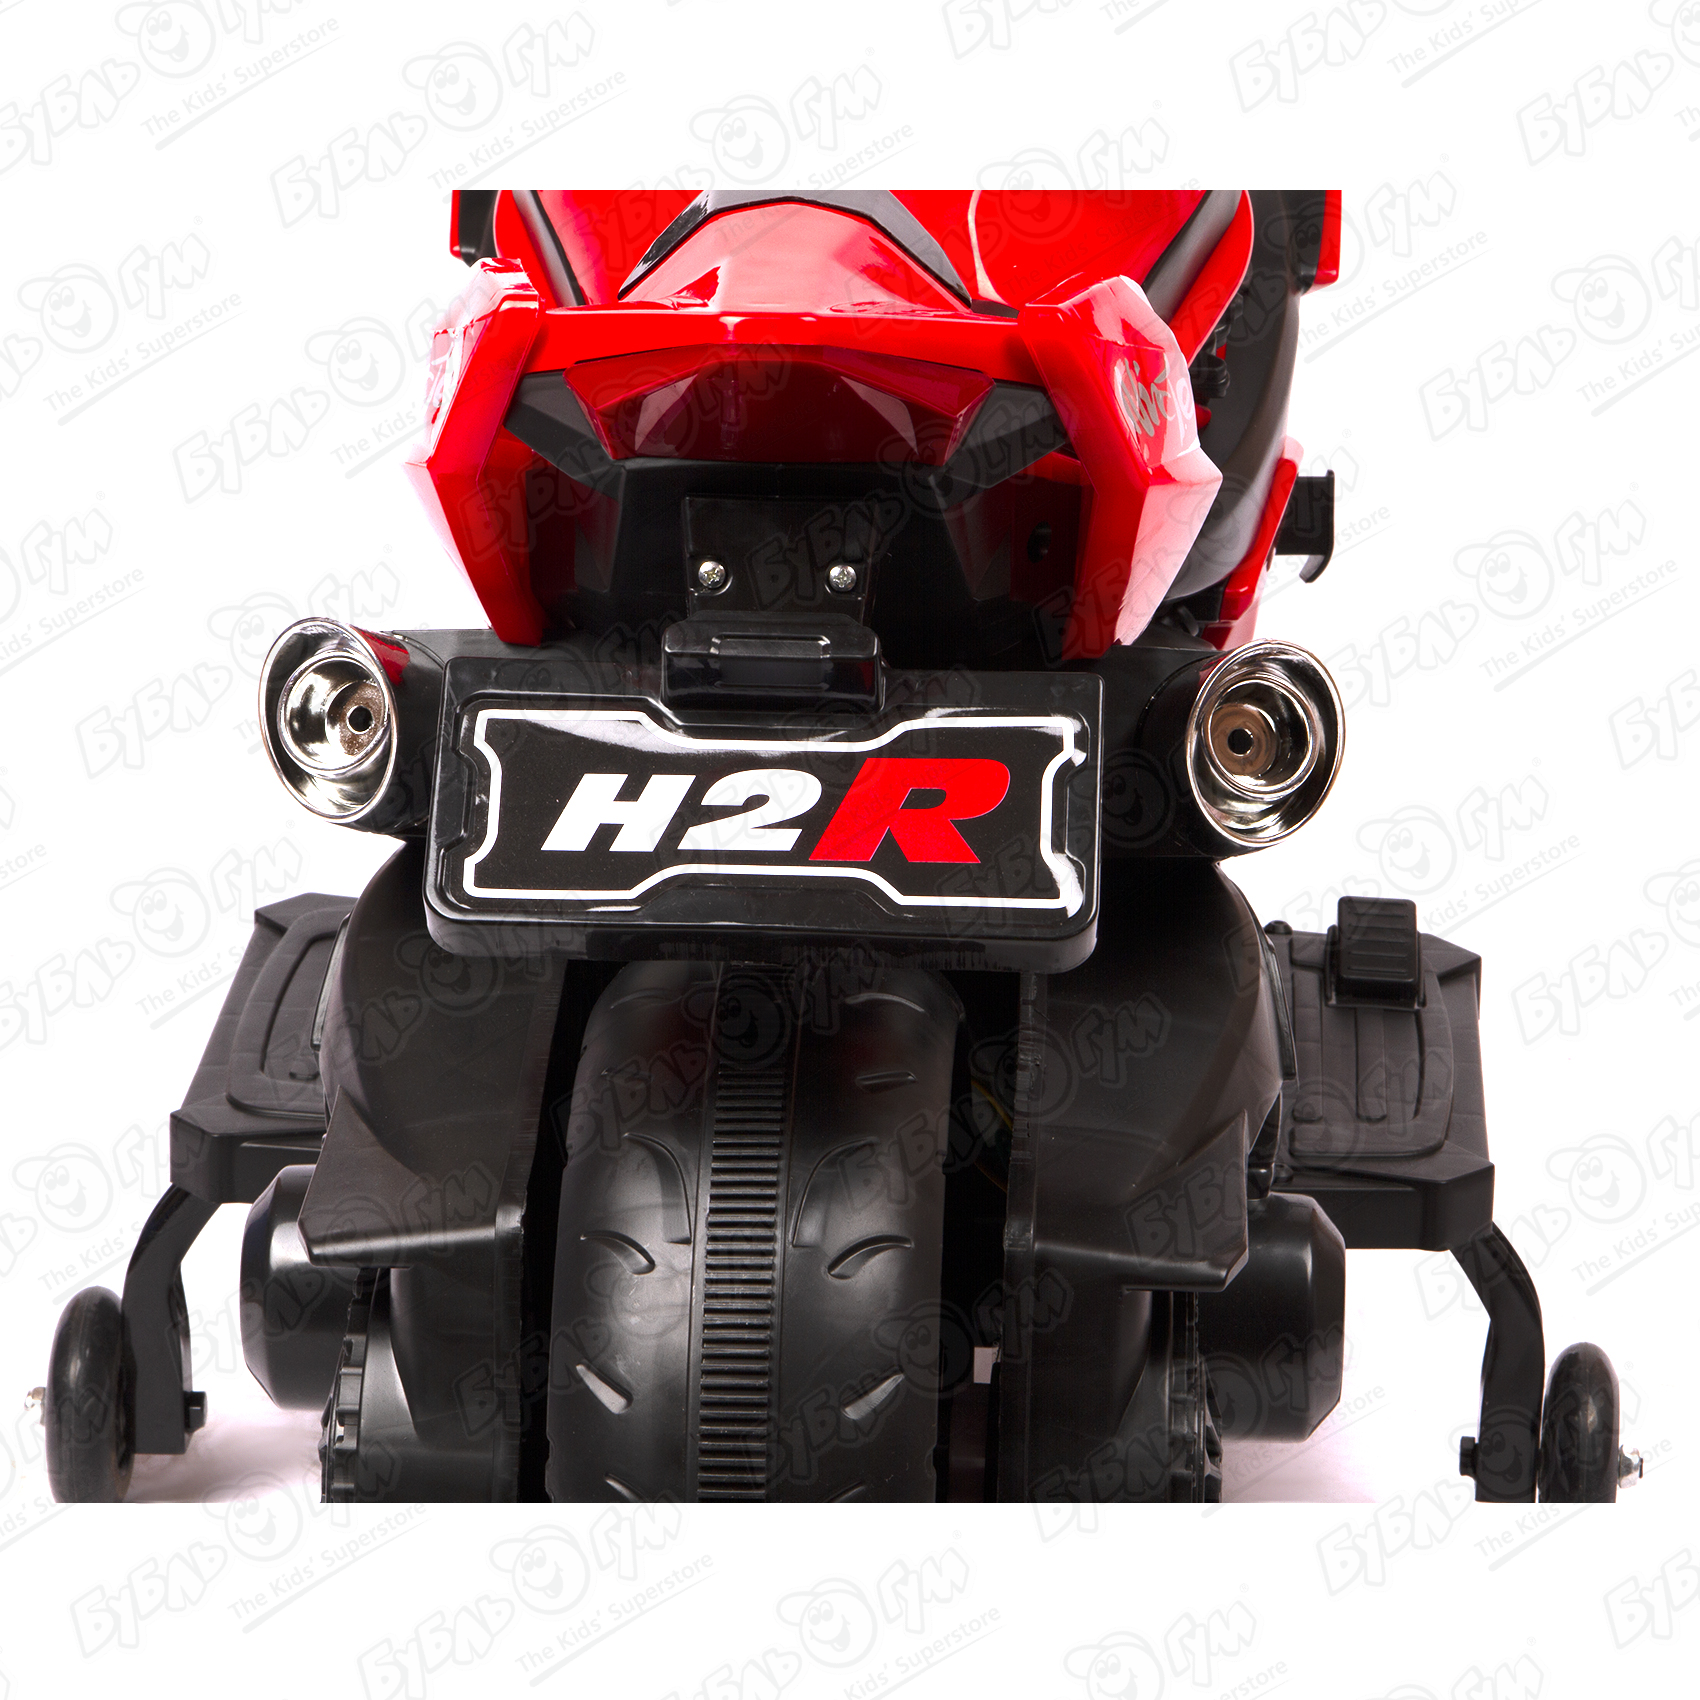 Мотоцикл H2R аккумуляторный черно-красный - фото 13